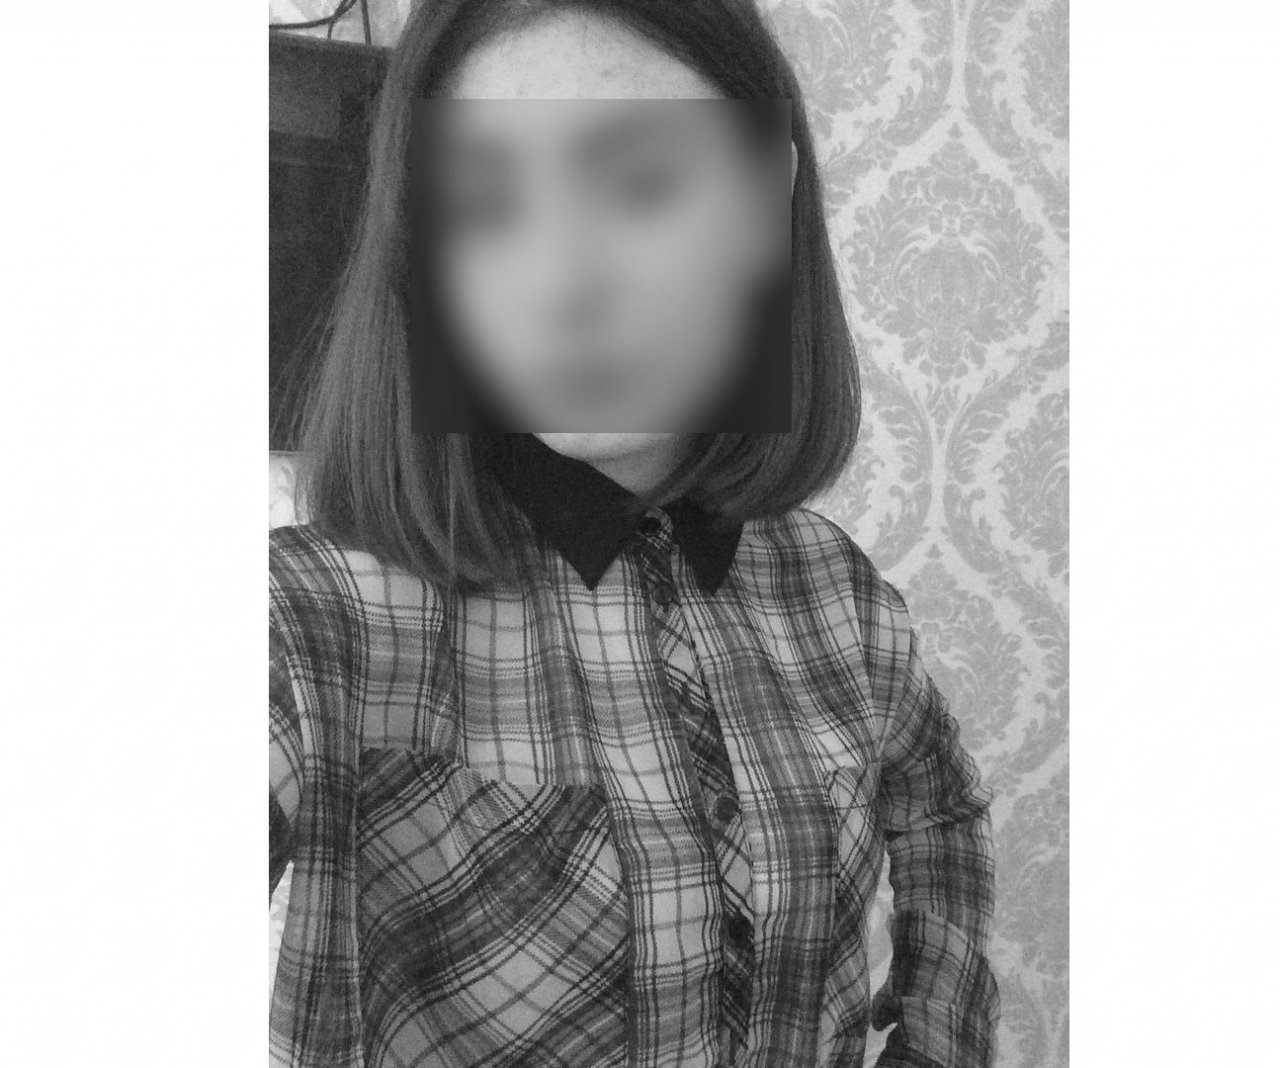 Мама погибшей в кировском СИЗО девушки: "На ее лице были следы побоев"